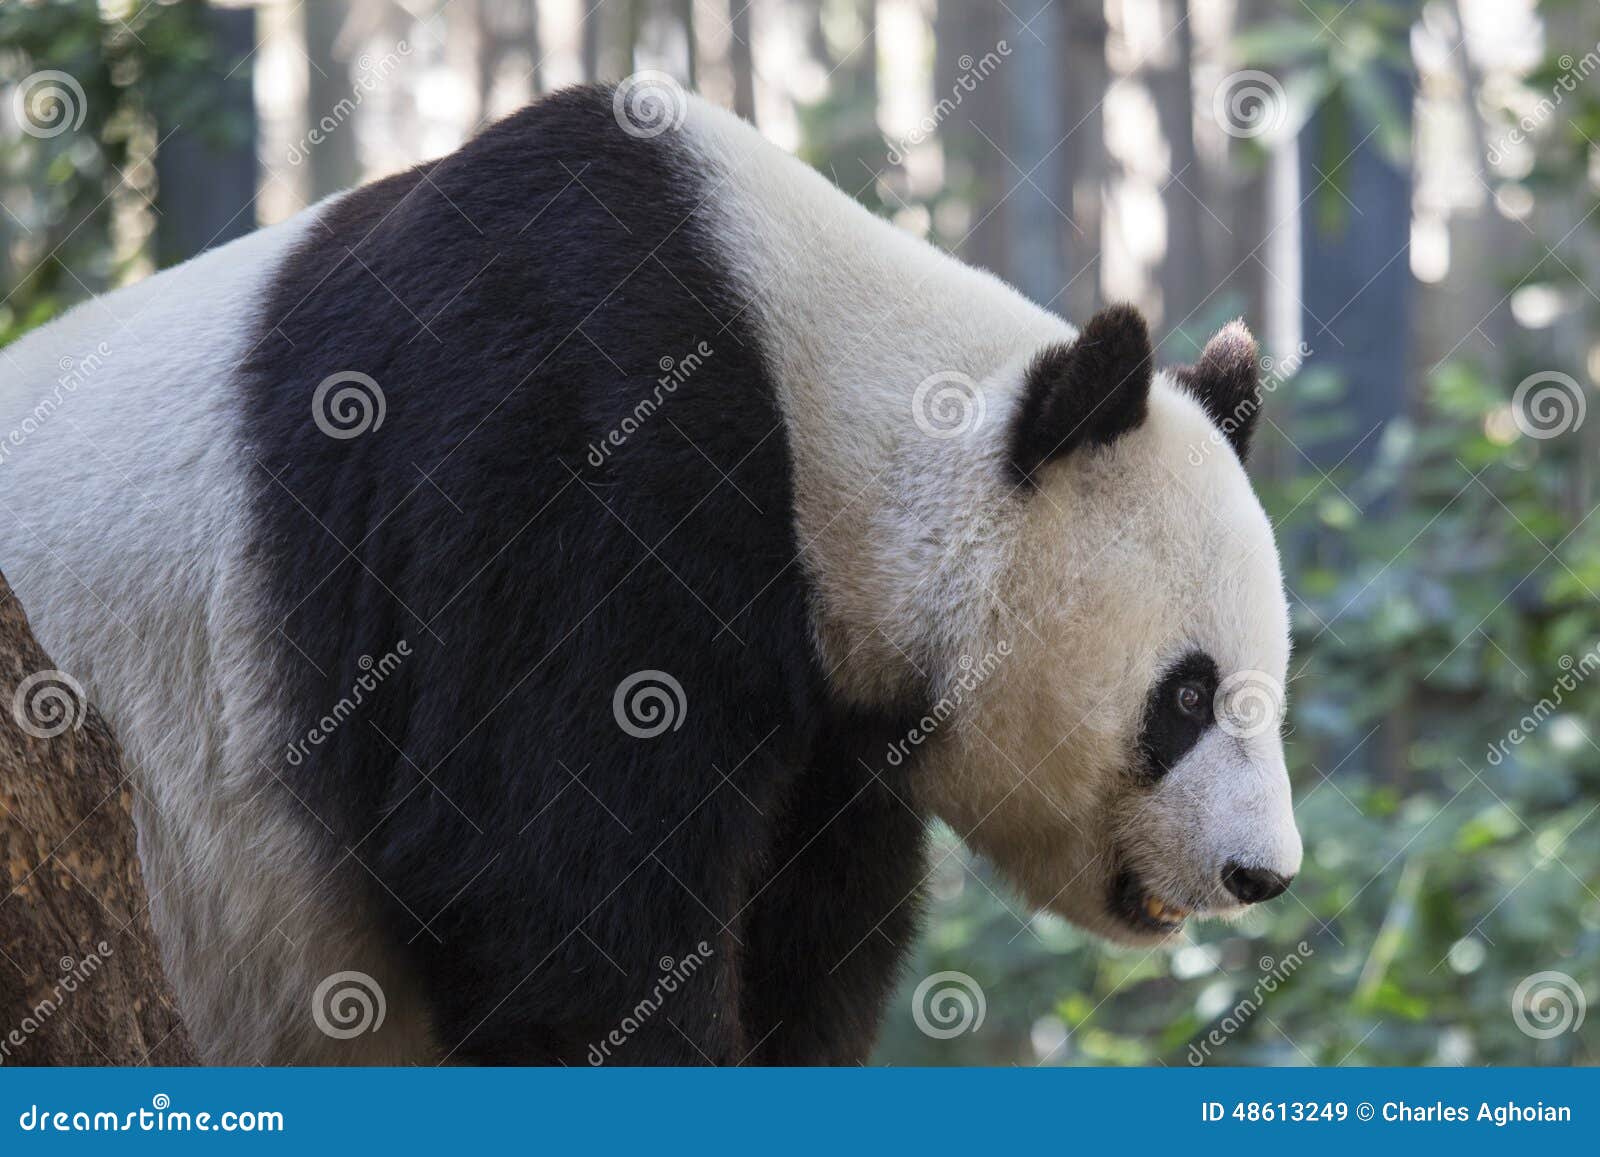 Jätte- pandabjörn. Bild av en jätte- Panda Bear